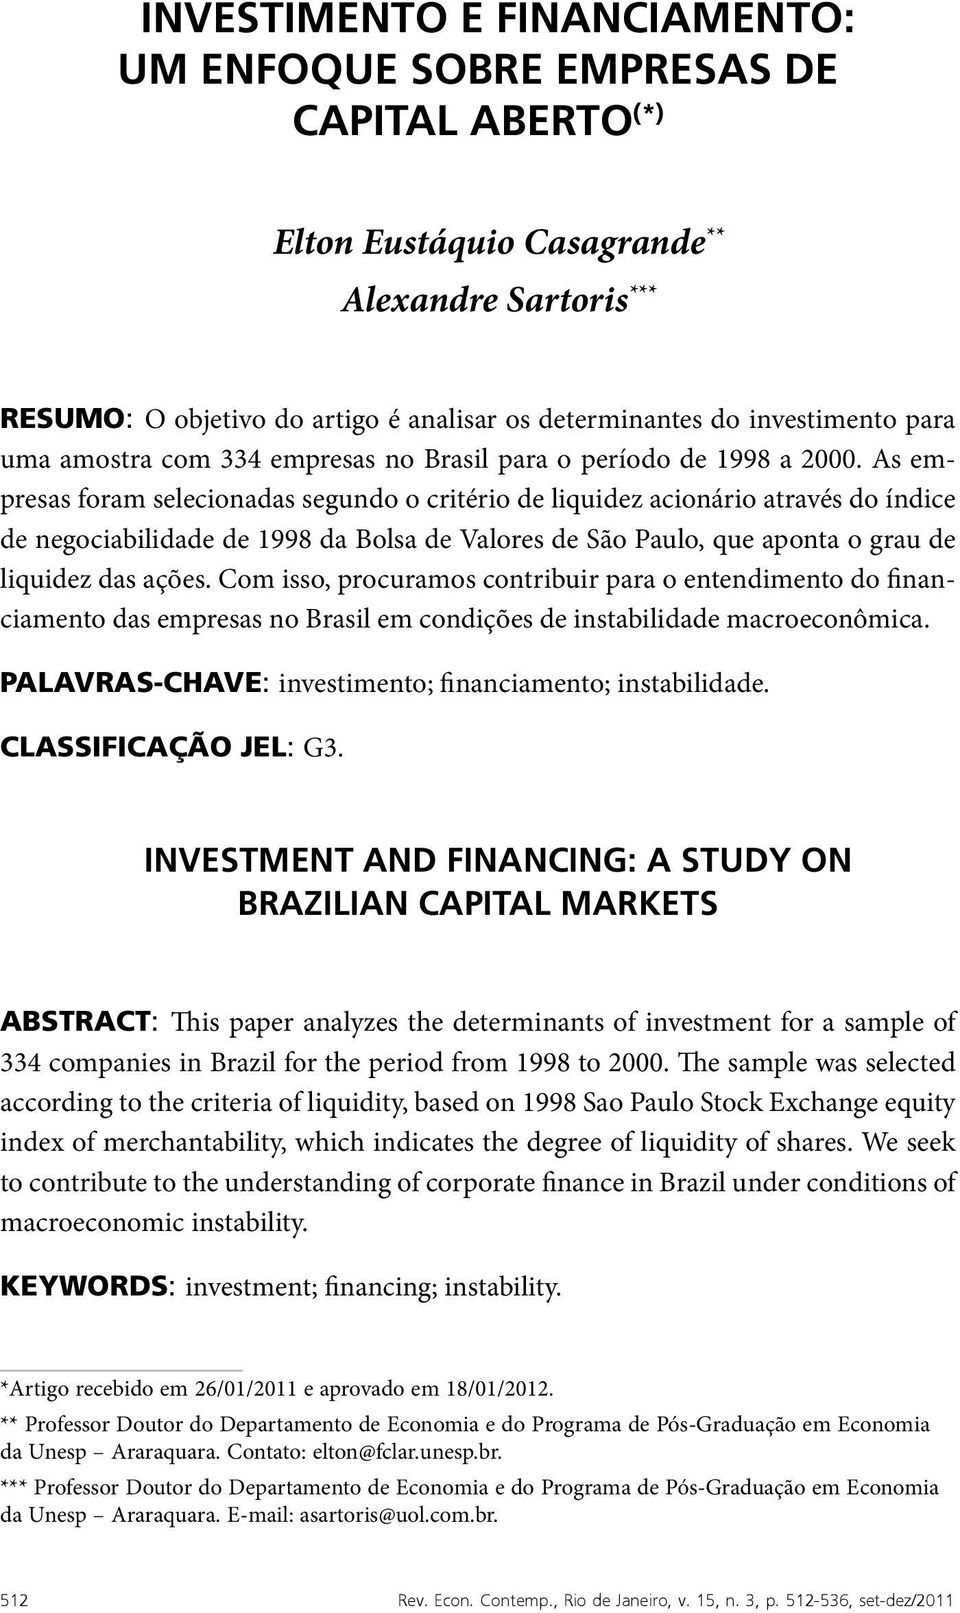 As empresas foram selecionadas segundo o critério de liquidez acionário através do índice de negociabilidade de 1998 da Bolsa de Valores de São Paulo, que aponta o grau de liquidez das ações.